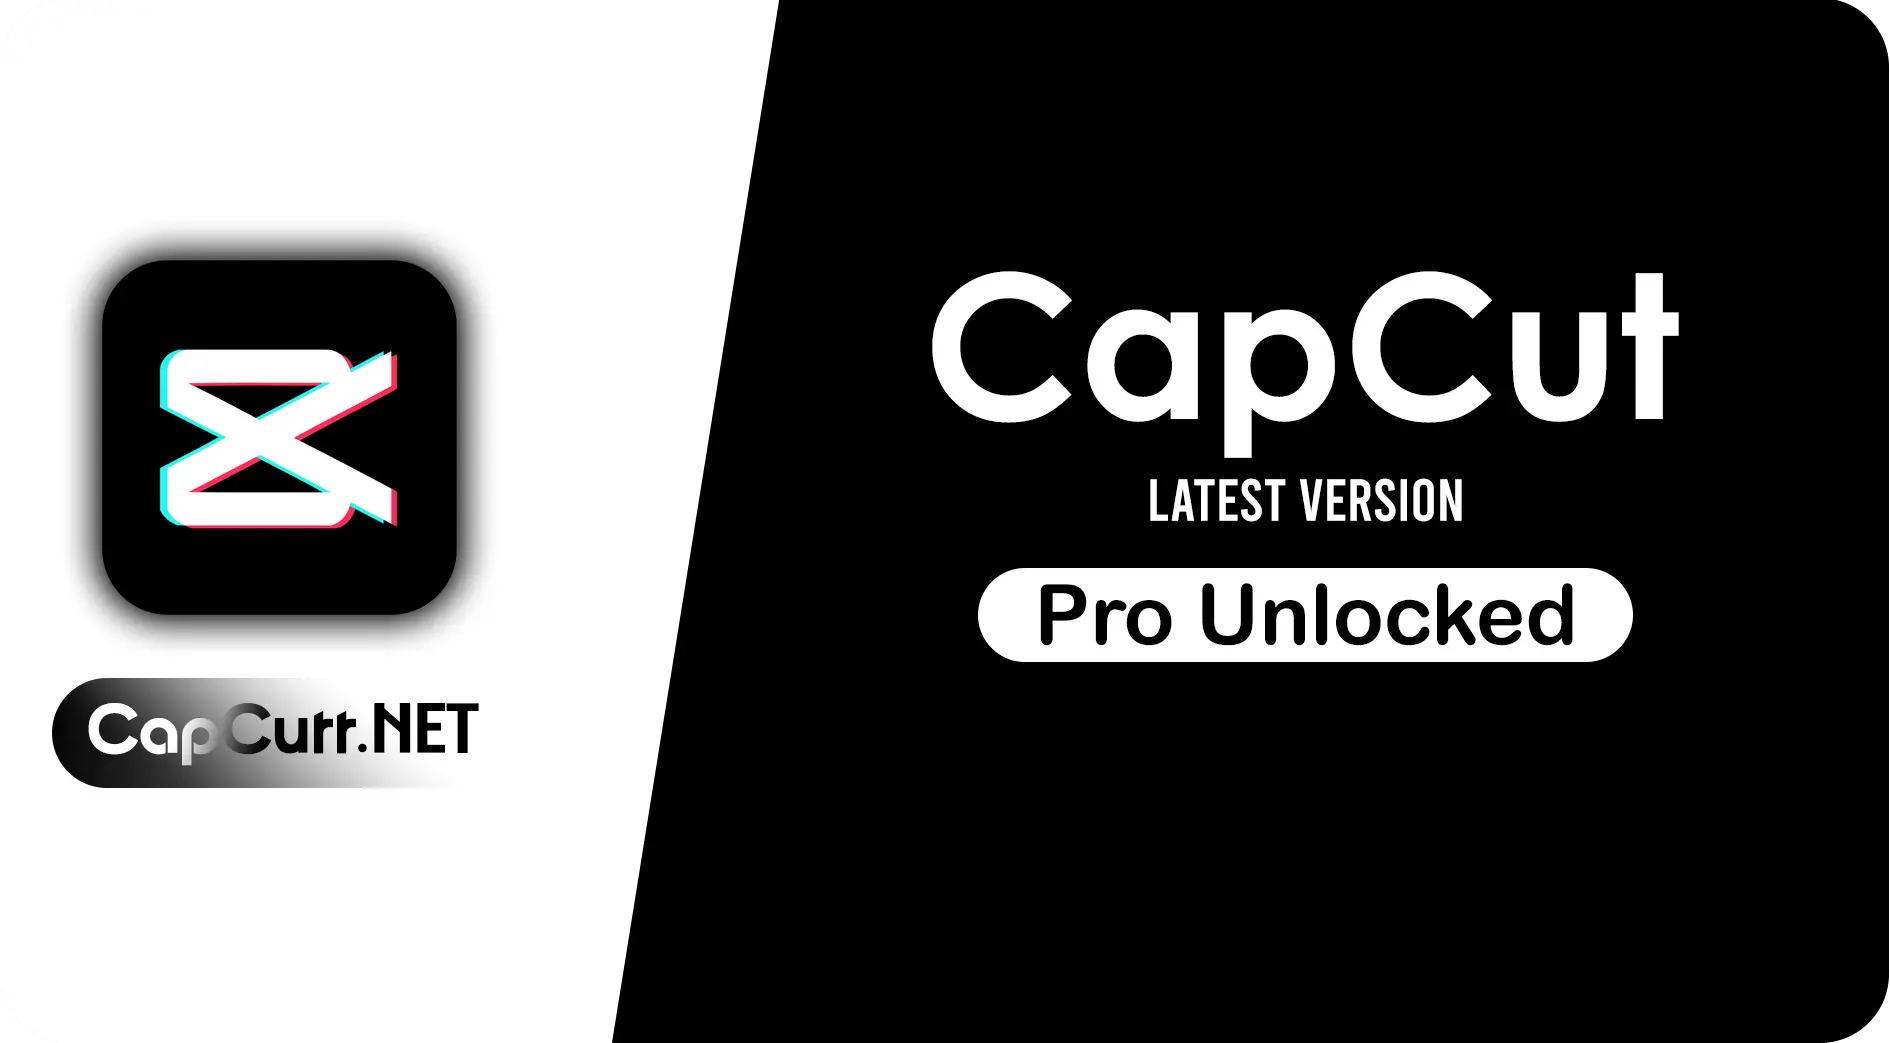 capcut mod apk download
capcut pro mod apk
capcut latest version mod apk
capcut apk mod download
capcut mod apk latest version
capcut new version mod apk
capcut pro mod apk download
download capcut mod apk
capcut 7.7.0 mod apk
capcut mod apk 2.8.1 (unlocked)
capcut mod apk pro